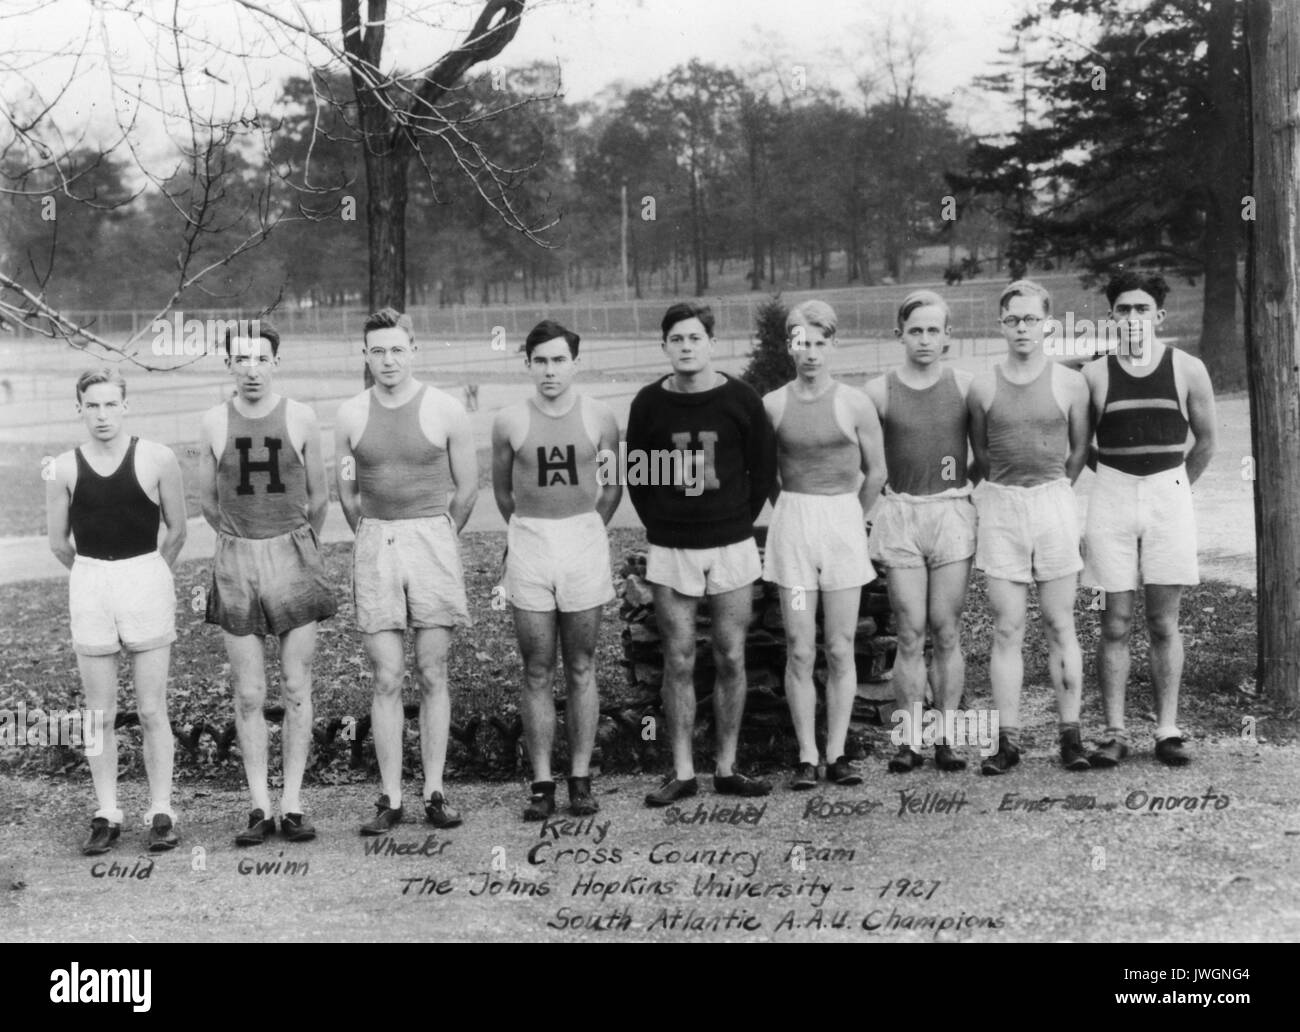 Cross Country Cross Country, Varsity Team Foto, alle Mitglieder identifiziert, stehen im Freien, in der Nähe der Tennisplätze, South Atlantic AAU Champions, 1927. Stockfoto